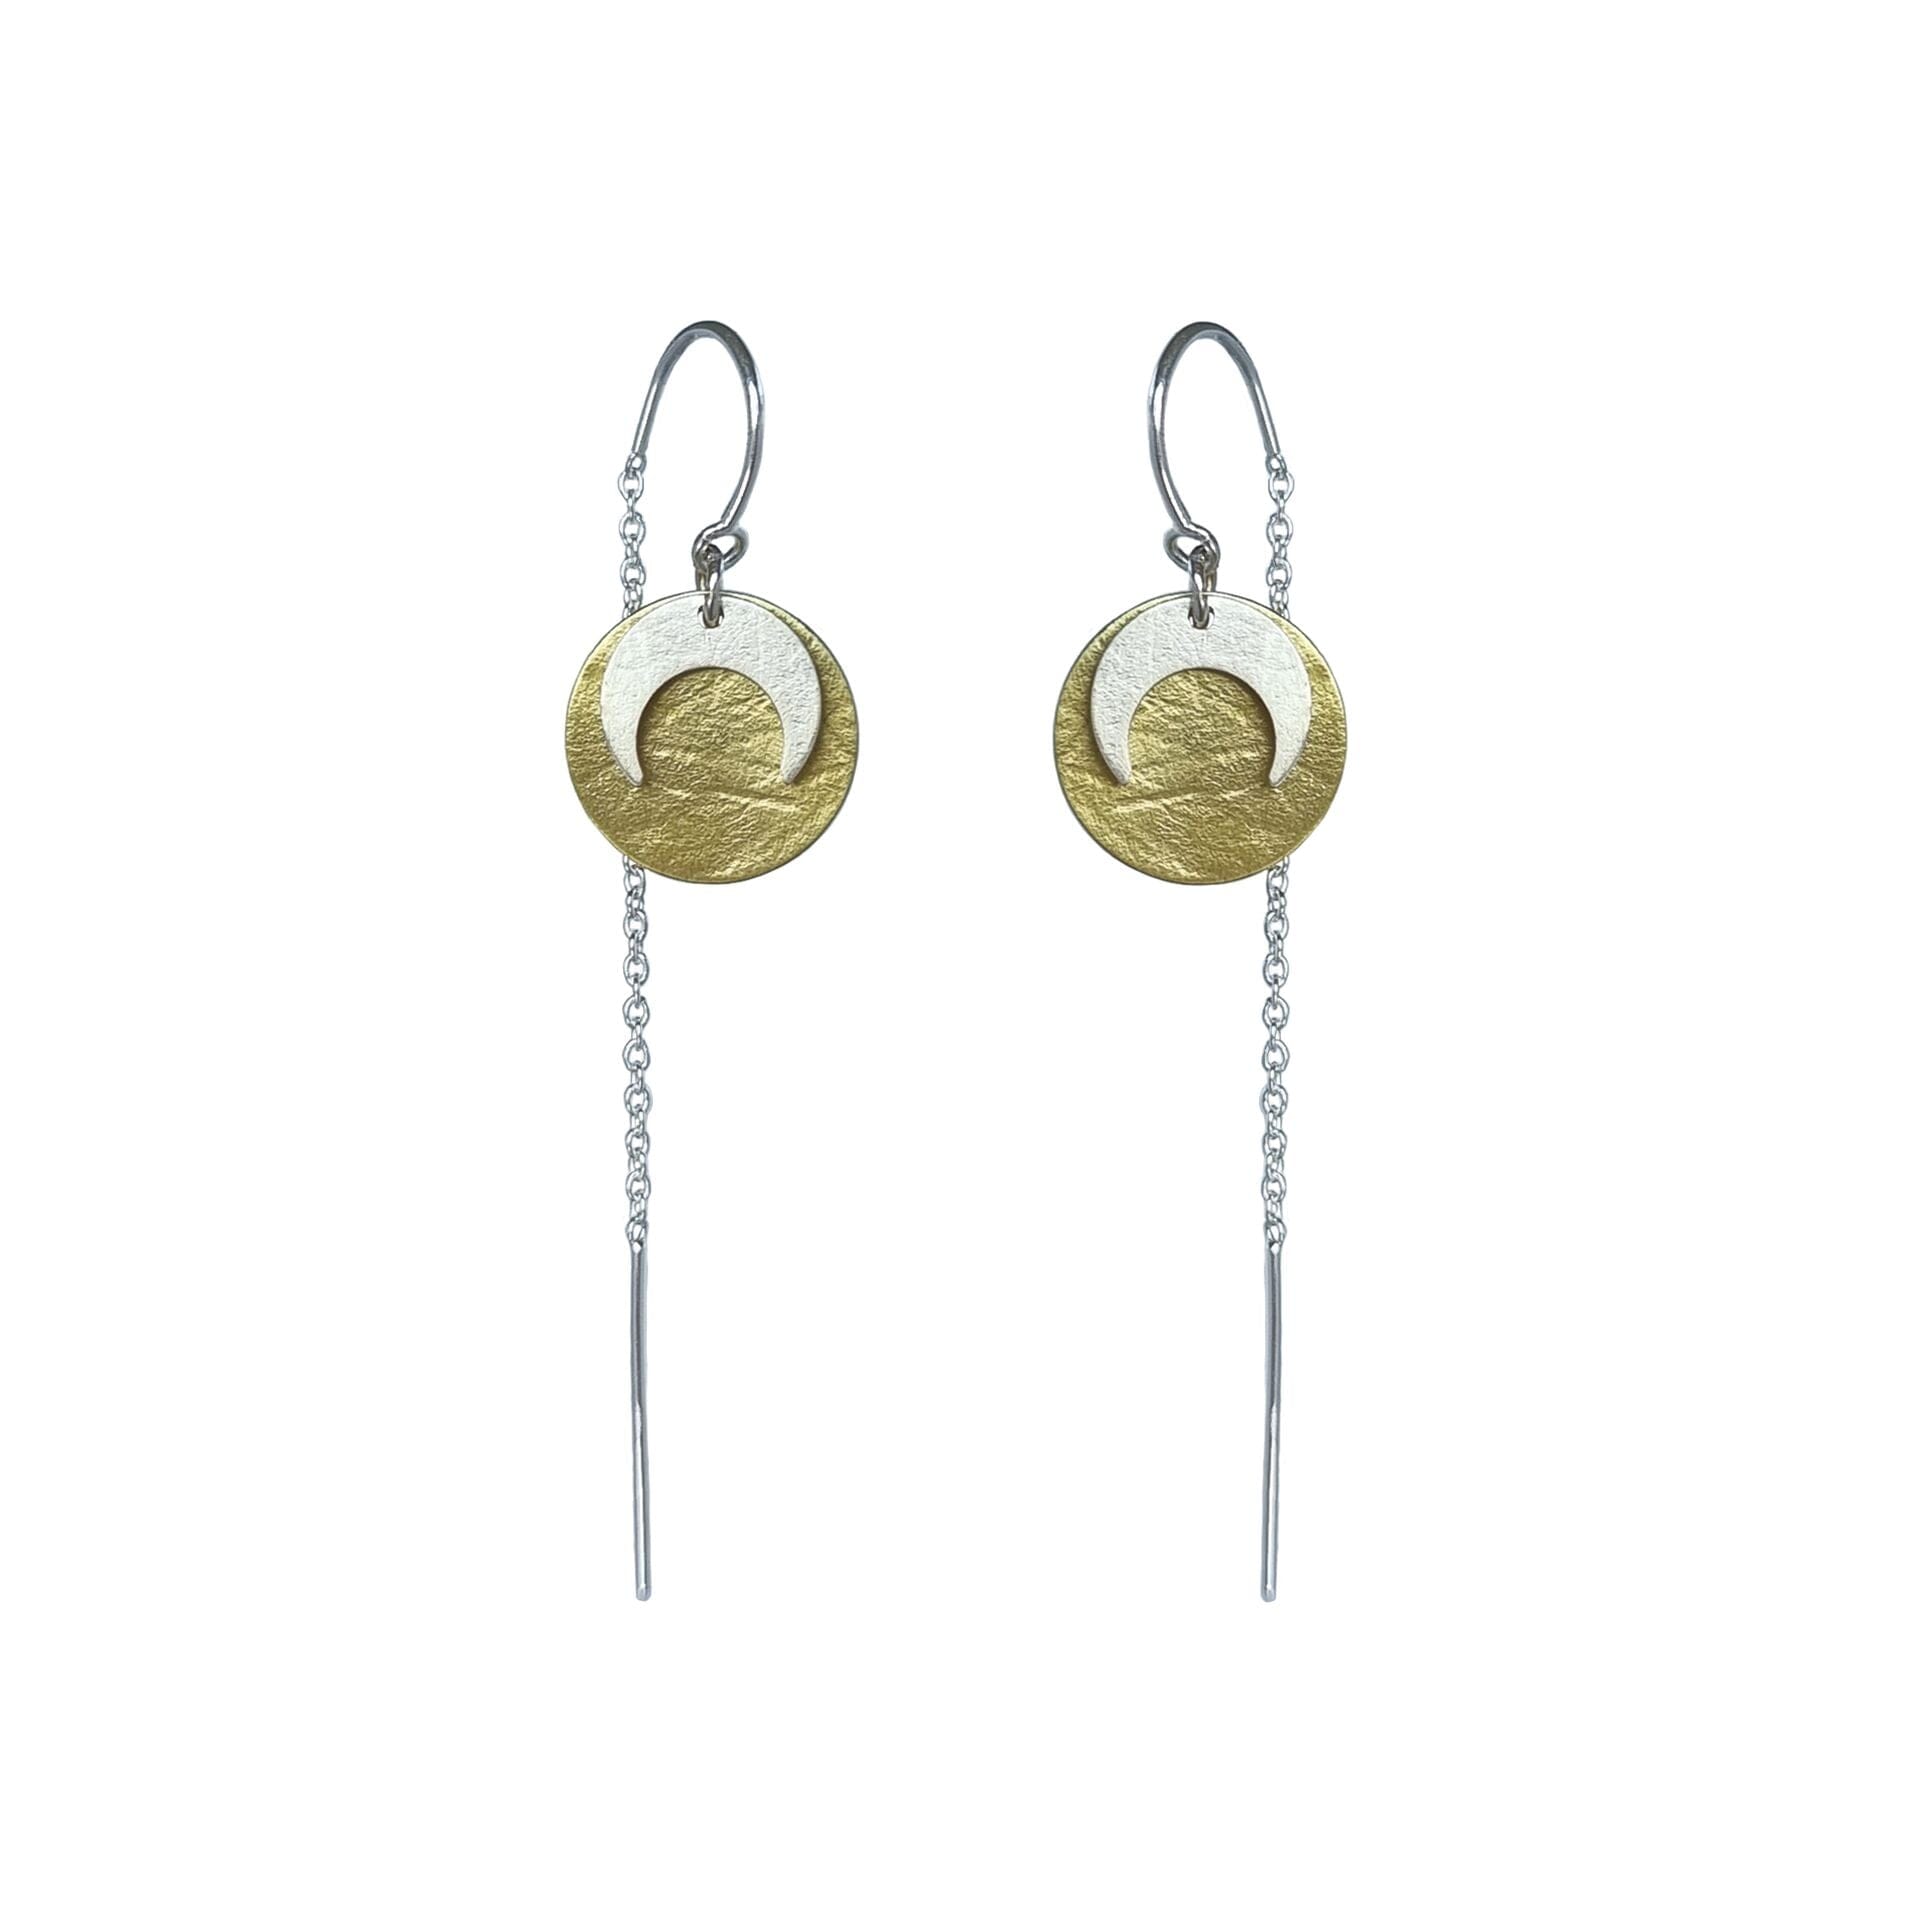 Luna Eclipse Thread Earring Earrings Emily Eliza Arlotte Silver on Brass 